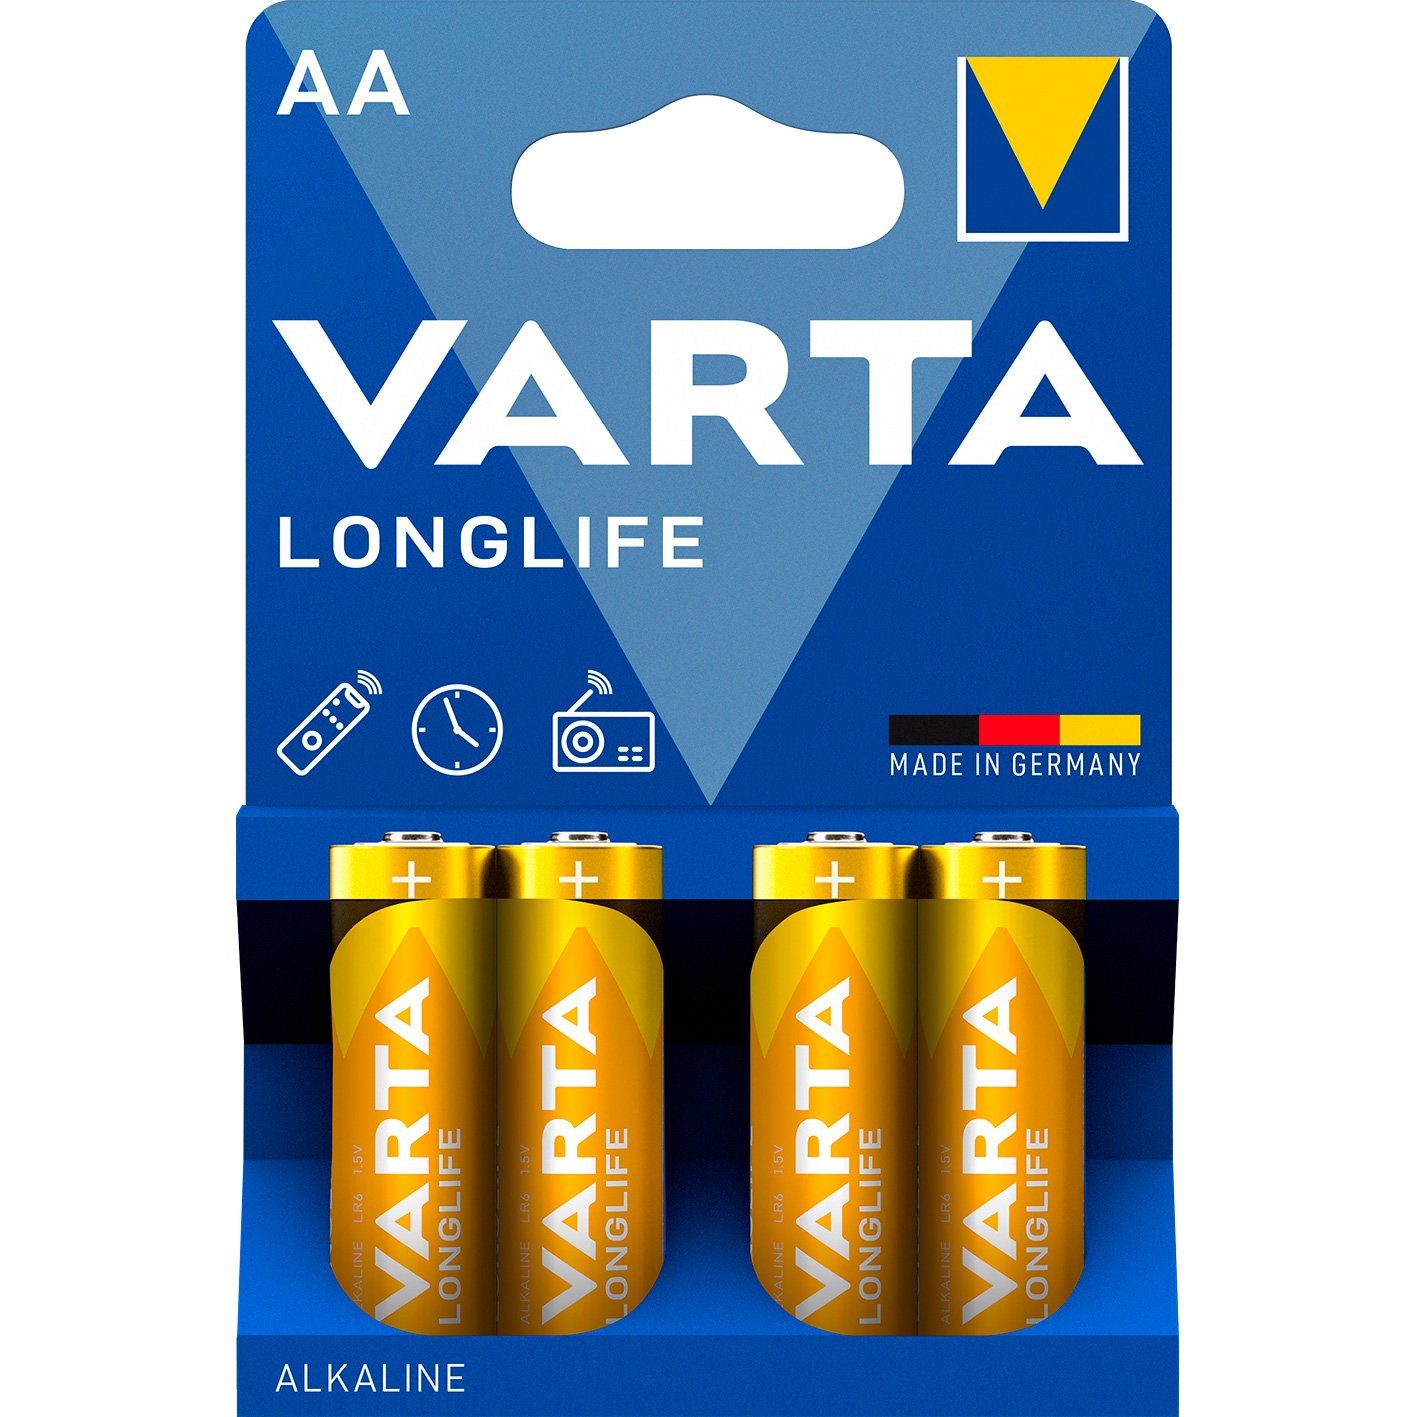 VARTA LongLife batteri AA/LR6 1.5 v 4 stk